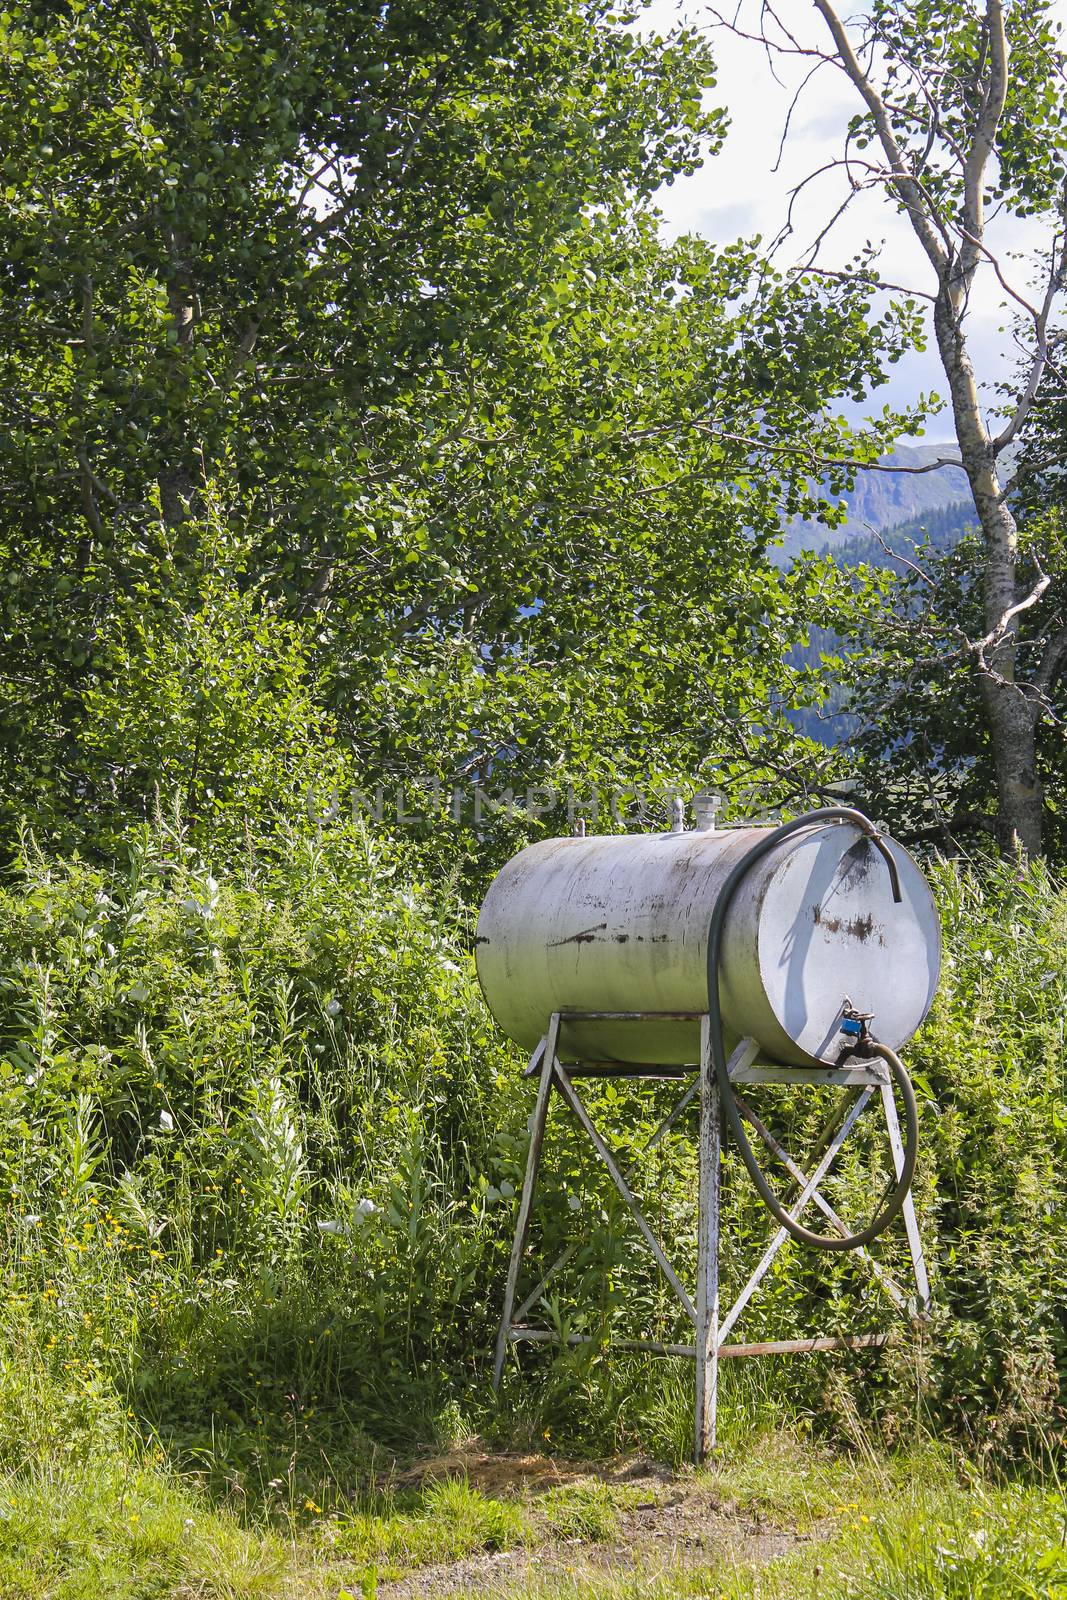 Petrol tank or water dispenser in the meadow in Hemsedal, Norway.